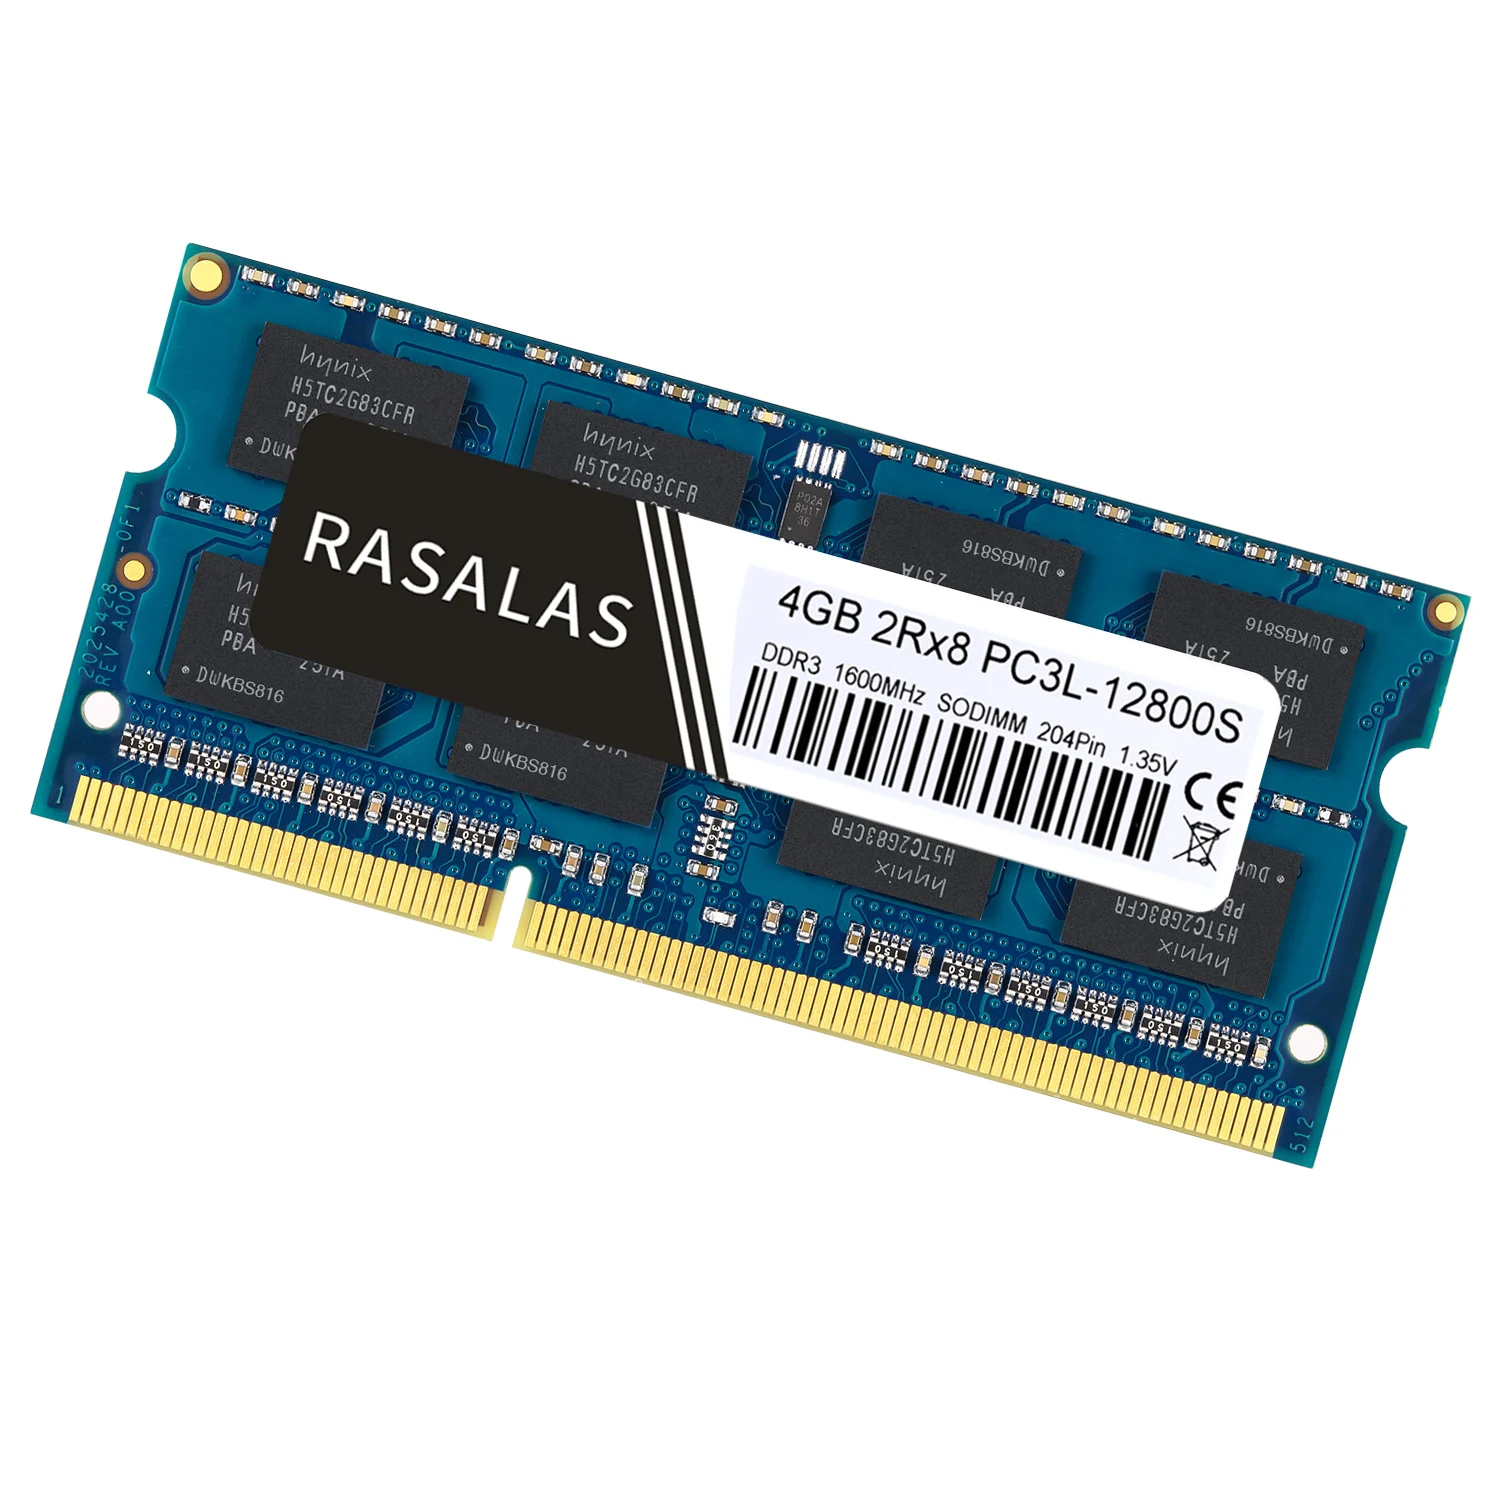 Rasalas 4GB 2Rx8 PC3-12800S DDR3L 1600Mhz SO-DIMM 1,5V 1,35 V Низкое напряжение ноутбук ram 204Pin Ноутбук полностью совместимая память синий